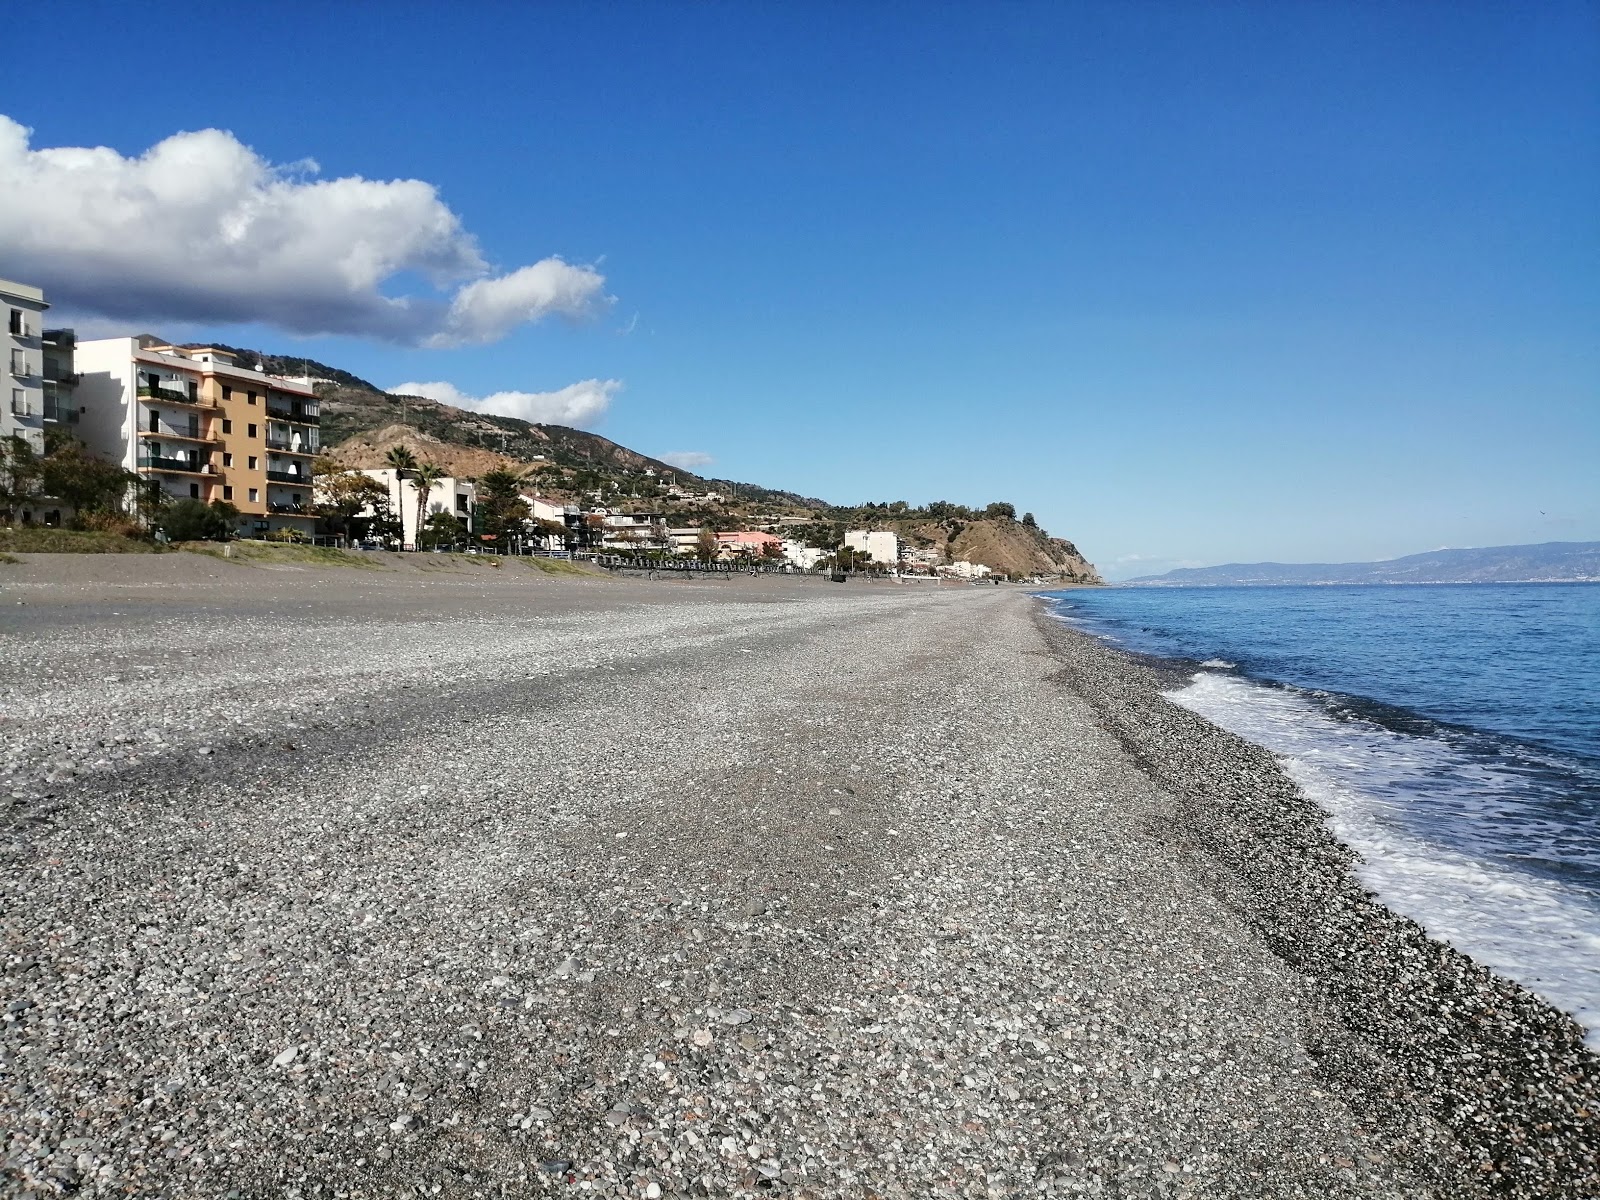 Ali Terme beach'in fotoğrafı gri çakıl taşı yüzey ile